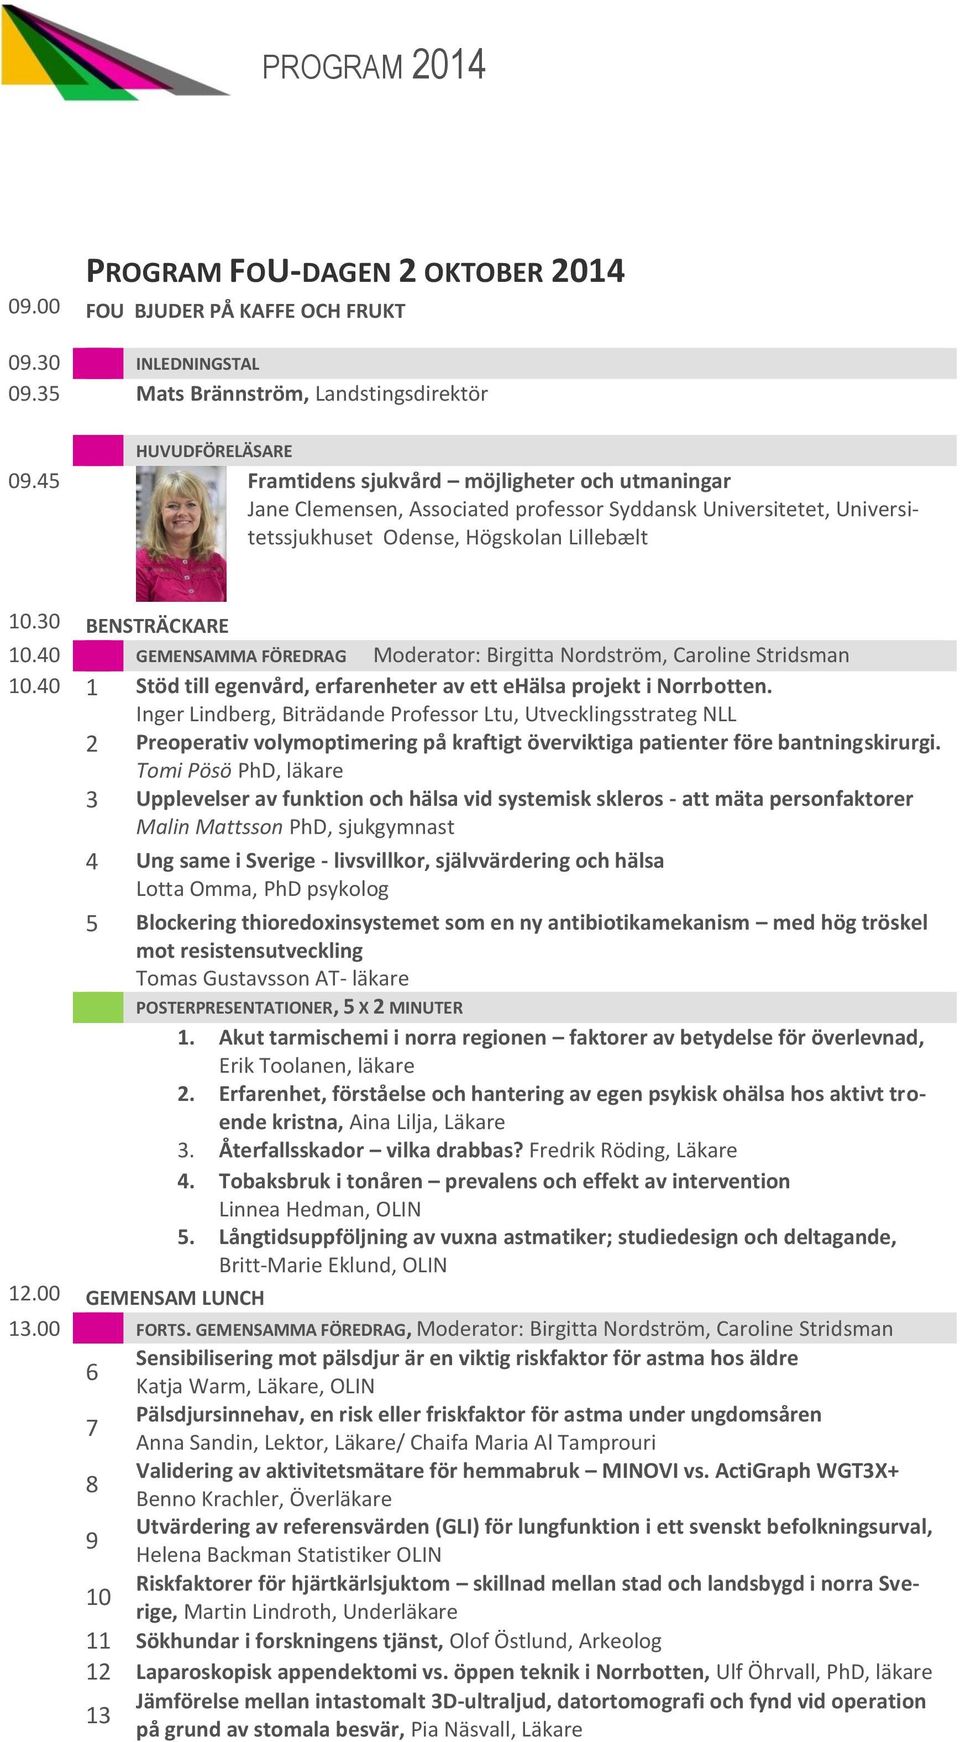 40 GEMENSAMMA FÖREDRAG Moderator: Birgitta Nordström, Caroline Stridsman 10.40 1 Stöd till egenvård, erfarenheter av ett ehälsa projekt i Norrbotten.